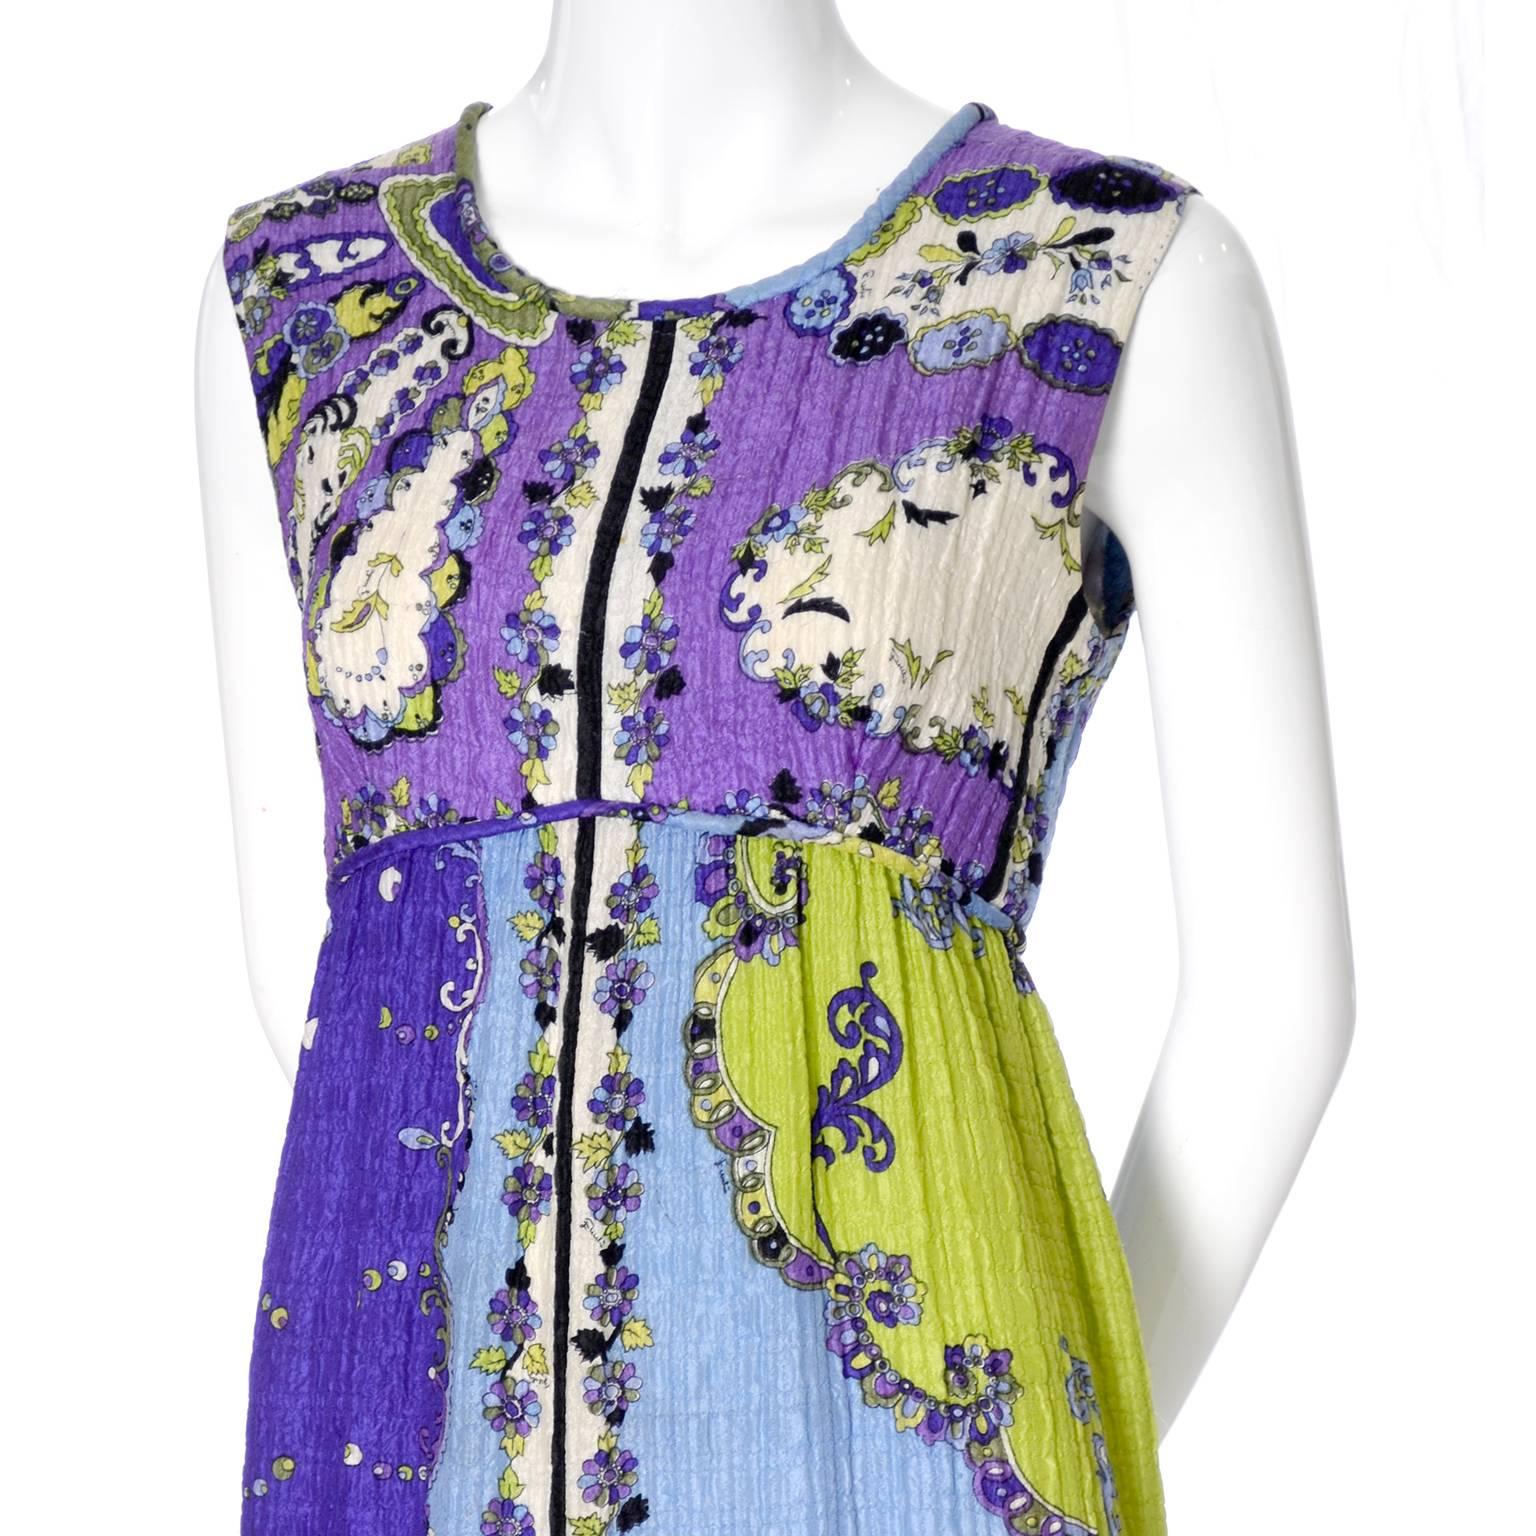 1960er Jahre Vintage Emilio Pucci Kleid aus Seide mit Knitterkragen, charakteristischer Pop-Art-Mod-Stoff 2